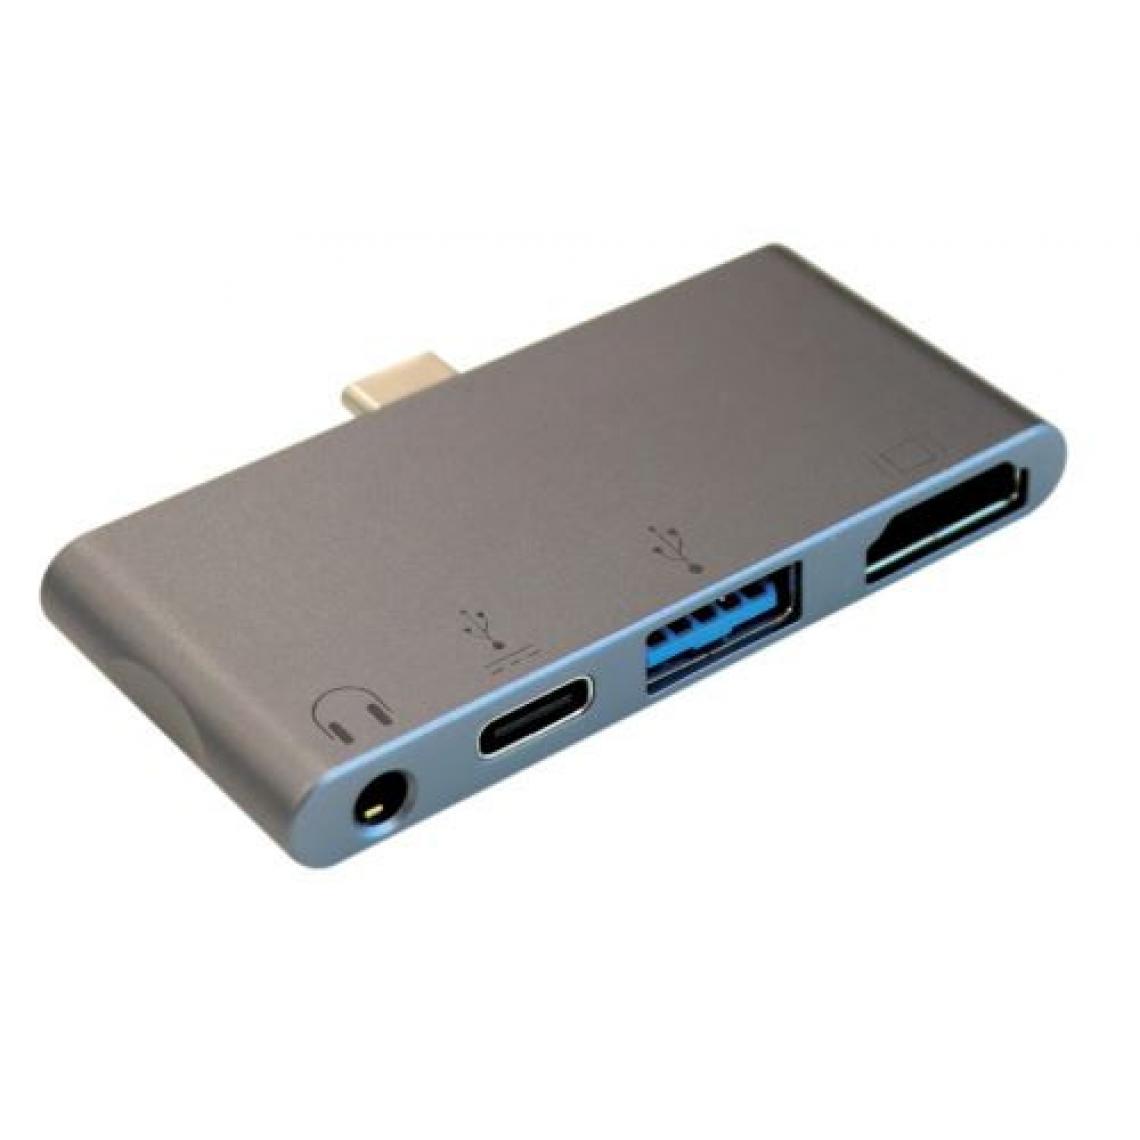 Itworks - Hub USB 4 en 1 pour Ipad Gris Sideral - Hub